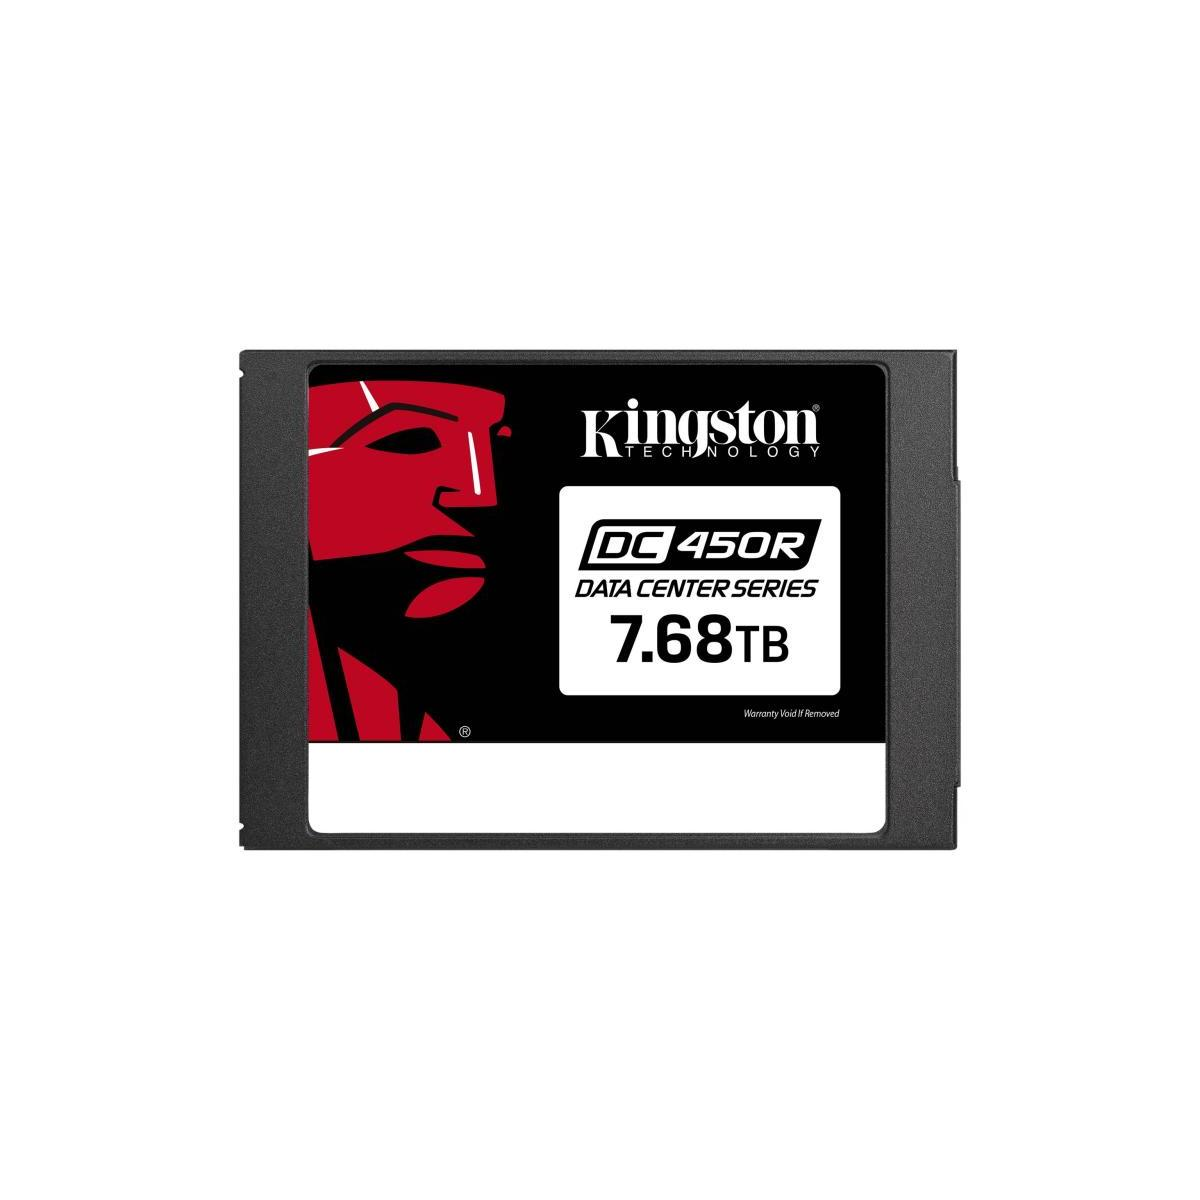 KINGSTON Kingston Data Center DC450R (SSD - 7.68TB intern, 7,68 TB, verschlüsselt), Zoll, SATA SSD, 2,5 intern 6Gb/s